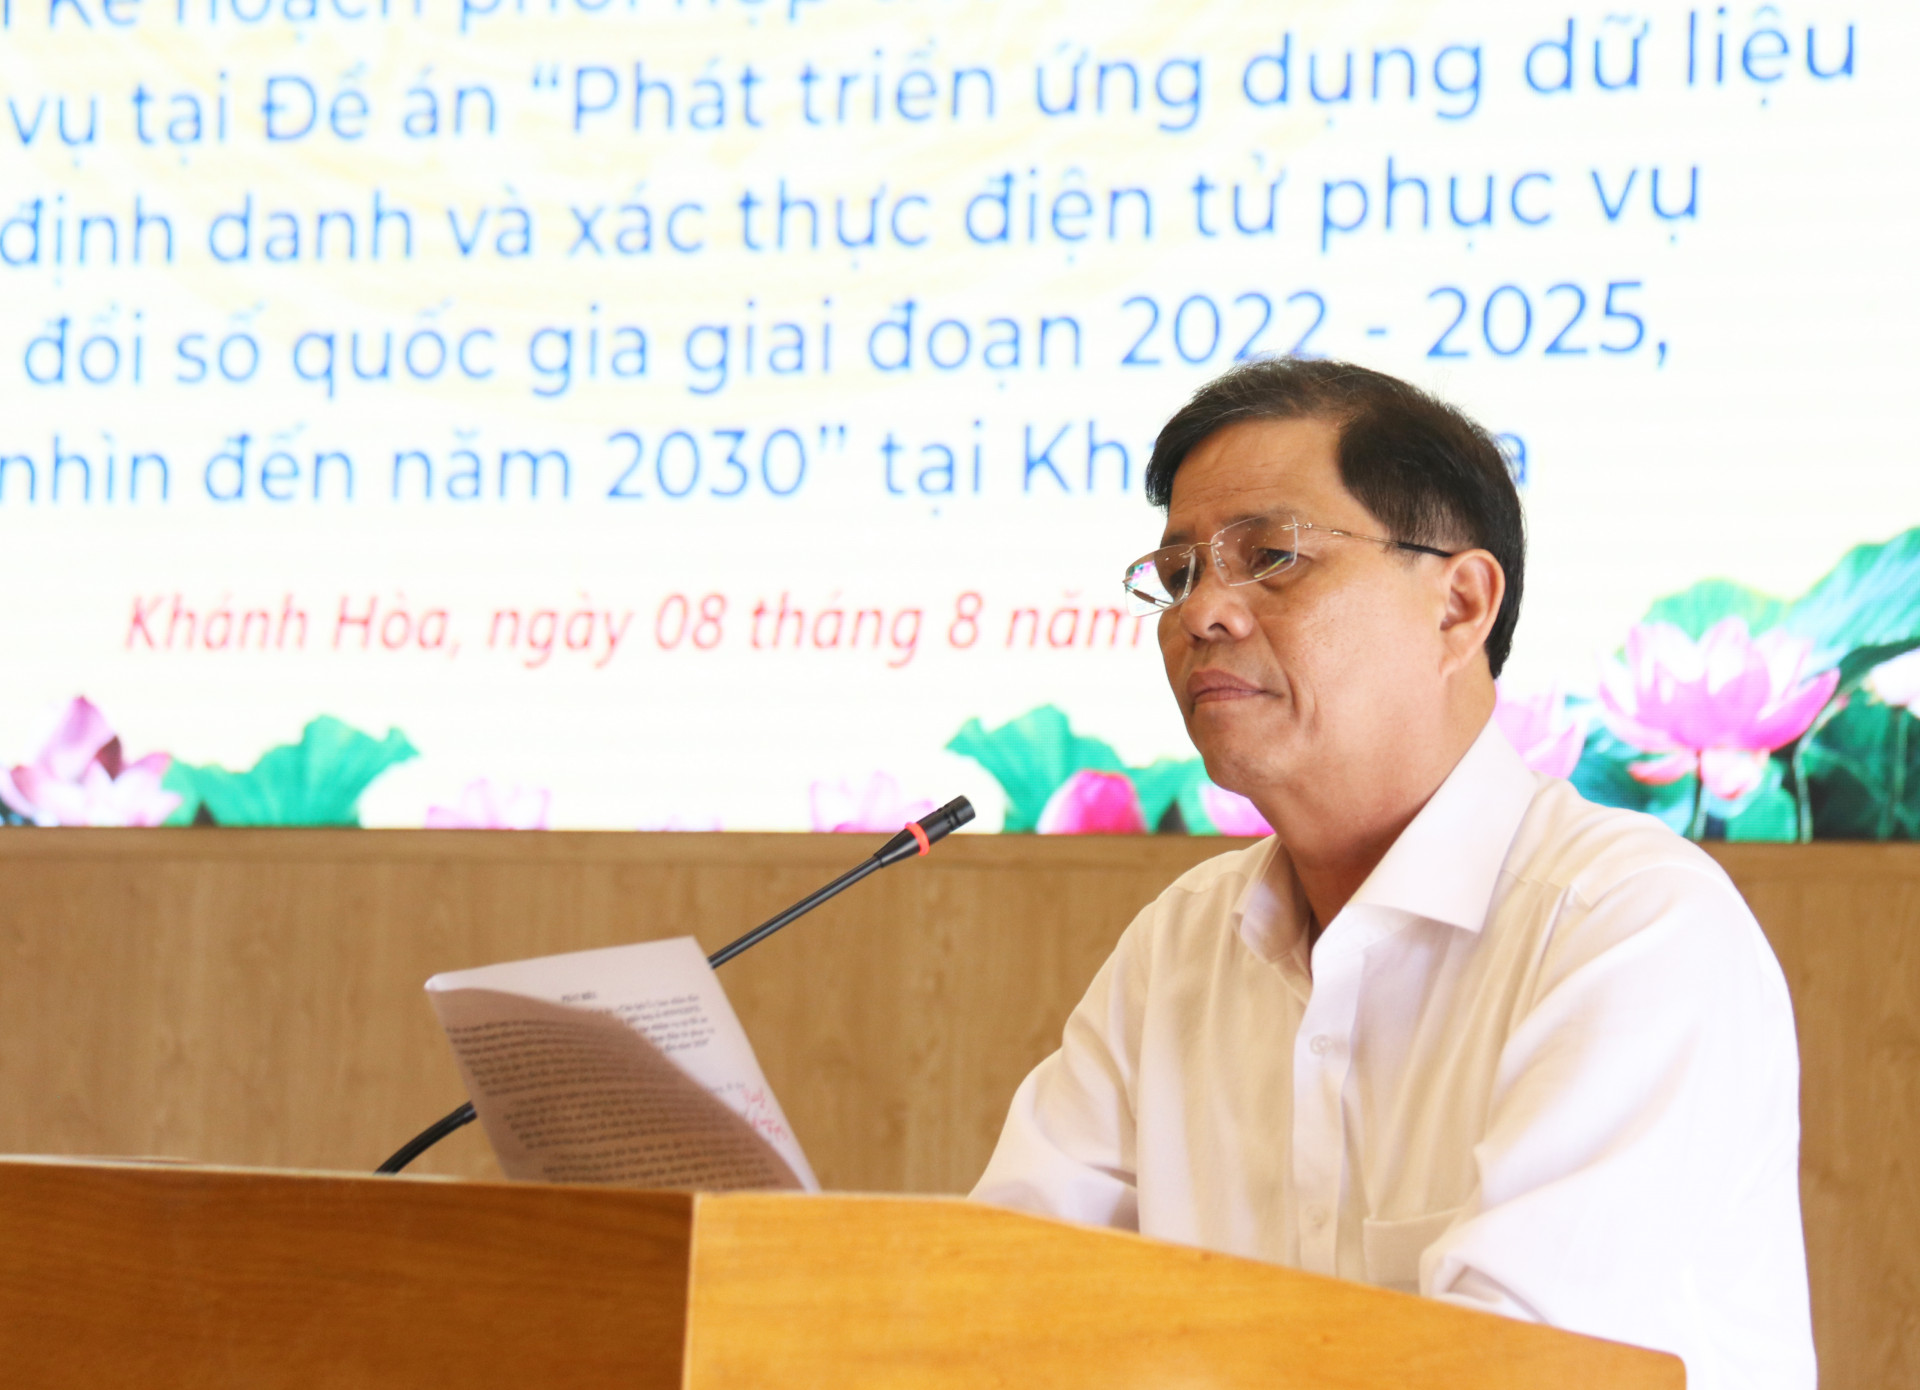 Đồng chí Nguyễn Tấn Tuân phát biểu tại hội nghị